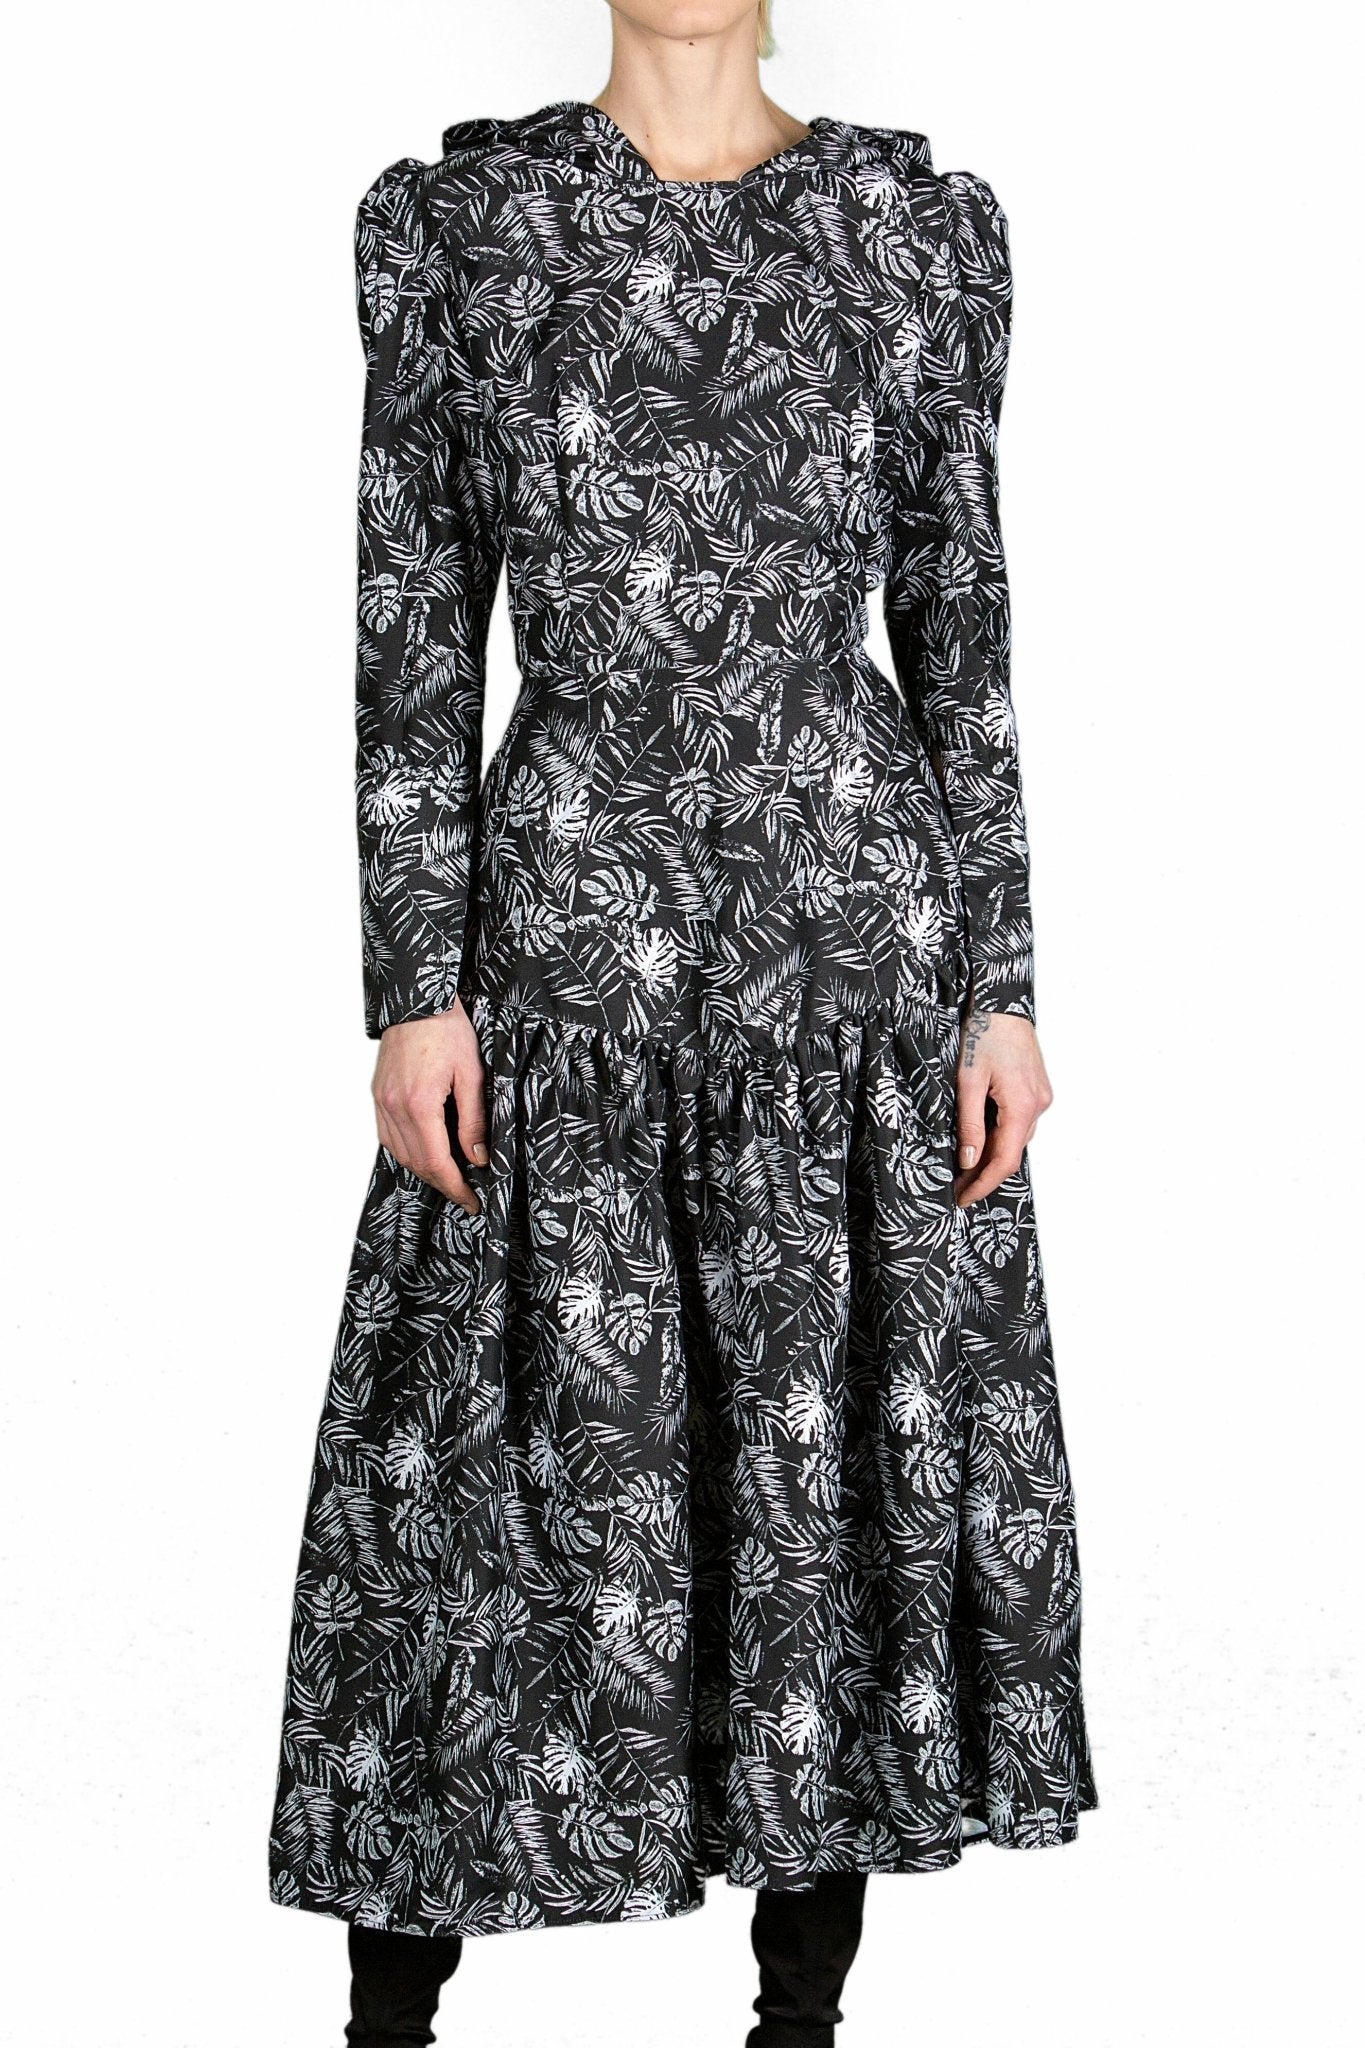 Ylai Dress - The Clothing LoungeCorina Boboc